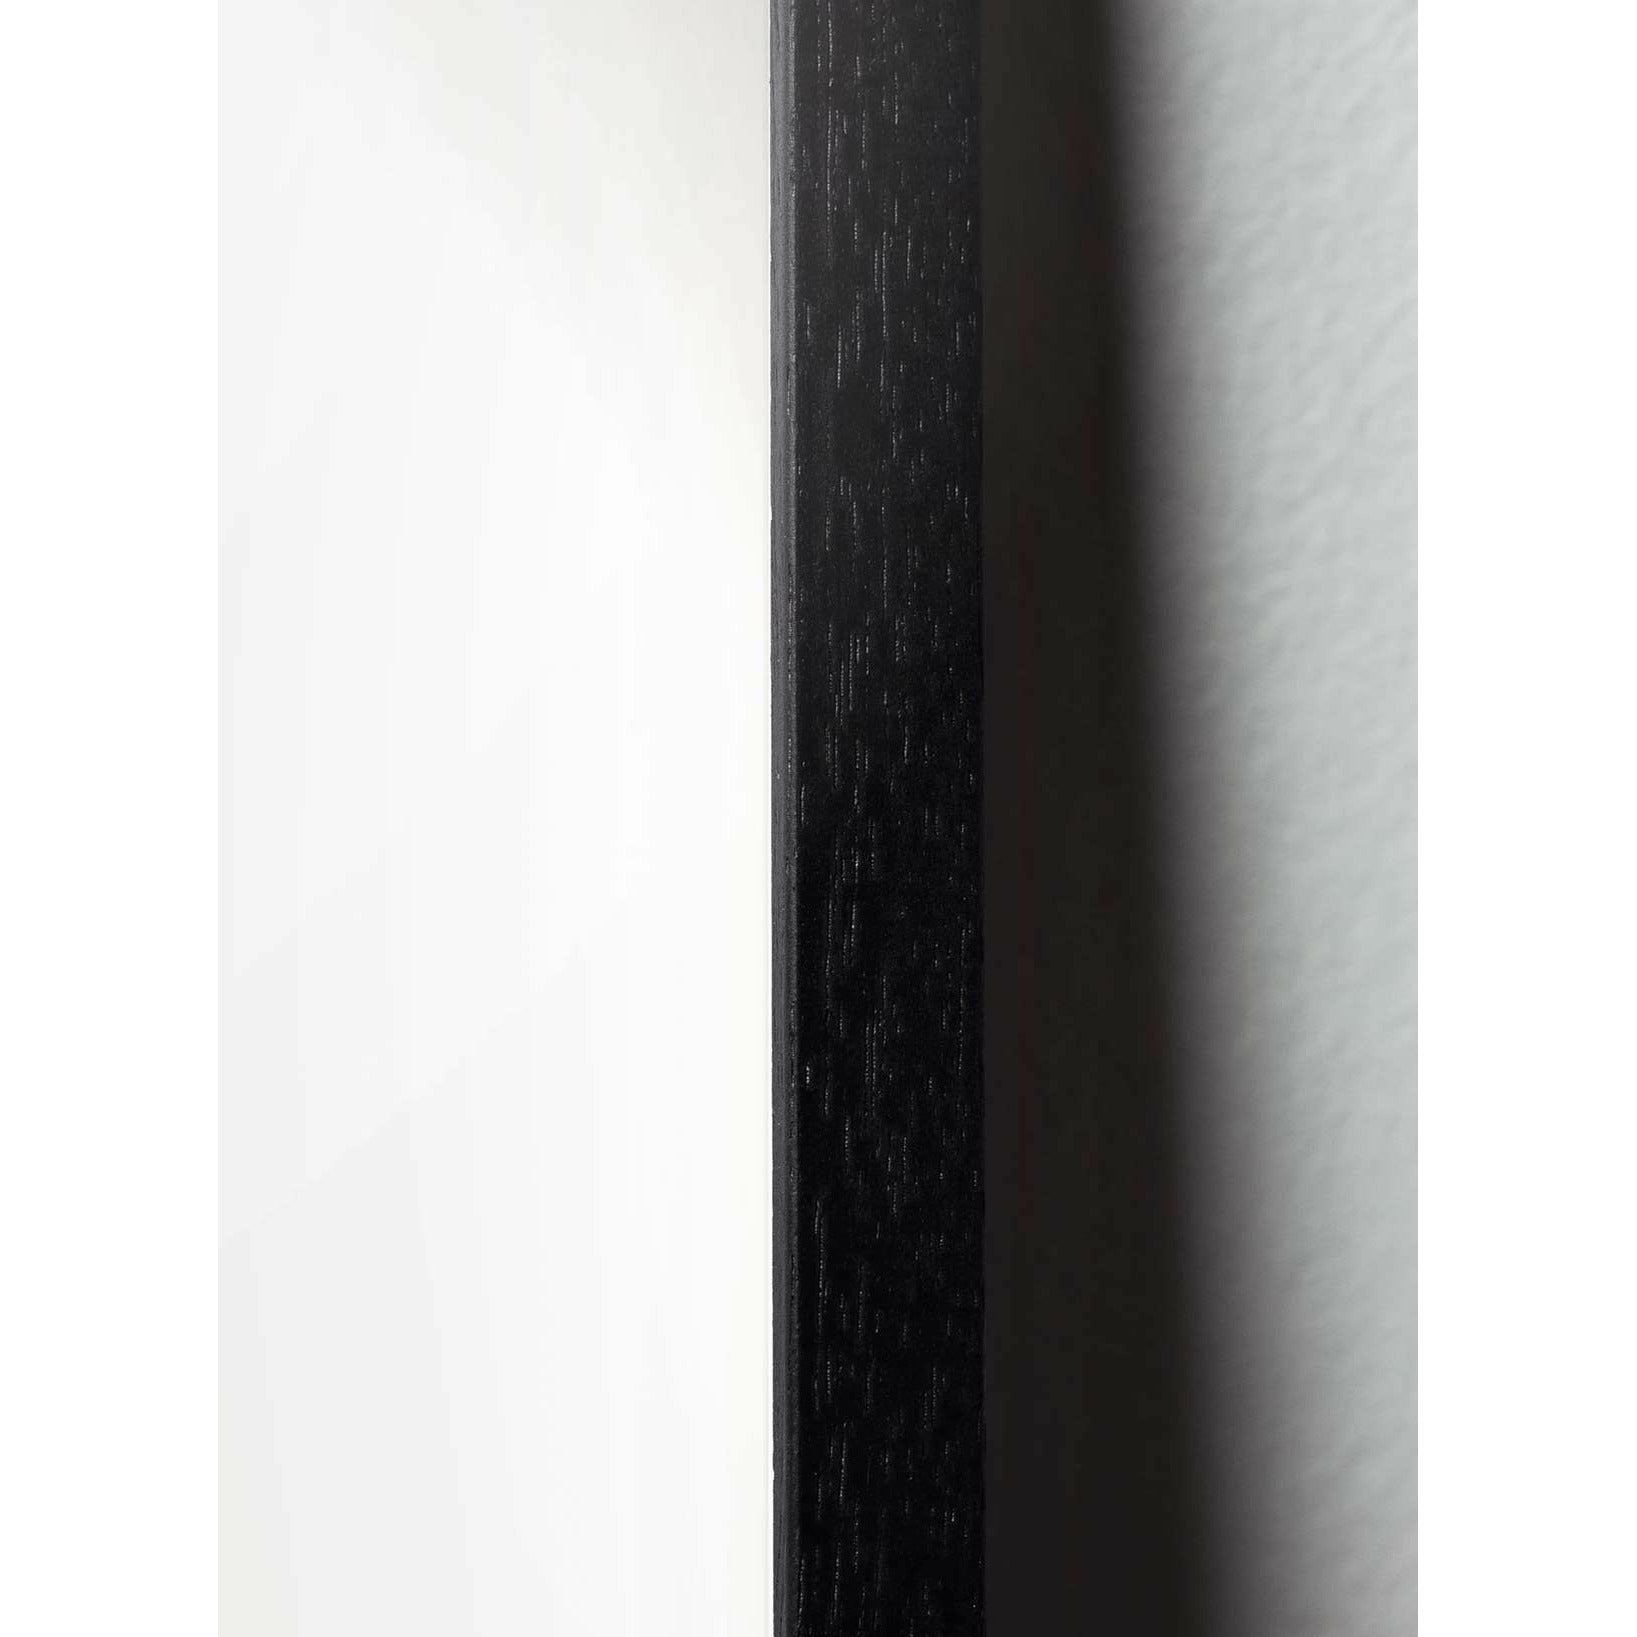 Plakát na kapkové lince mozků, rám v černém lakovaném dřevu 70x100 cm, bílé pozadí